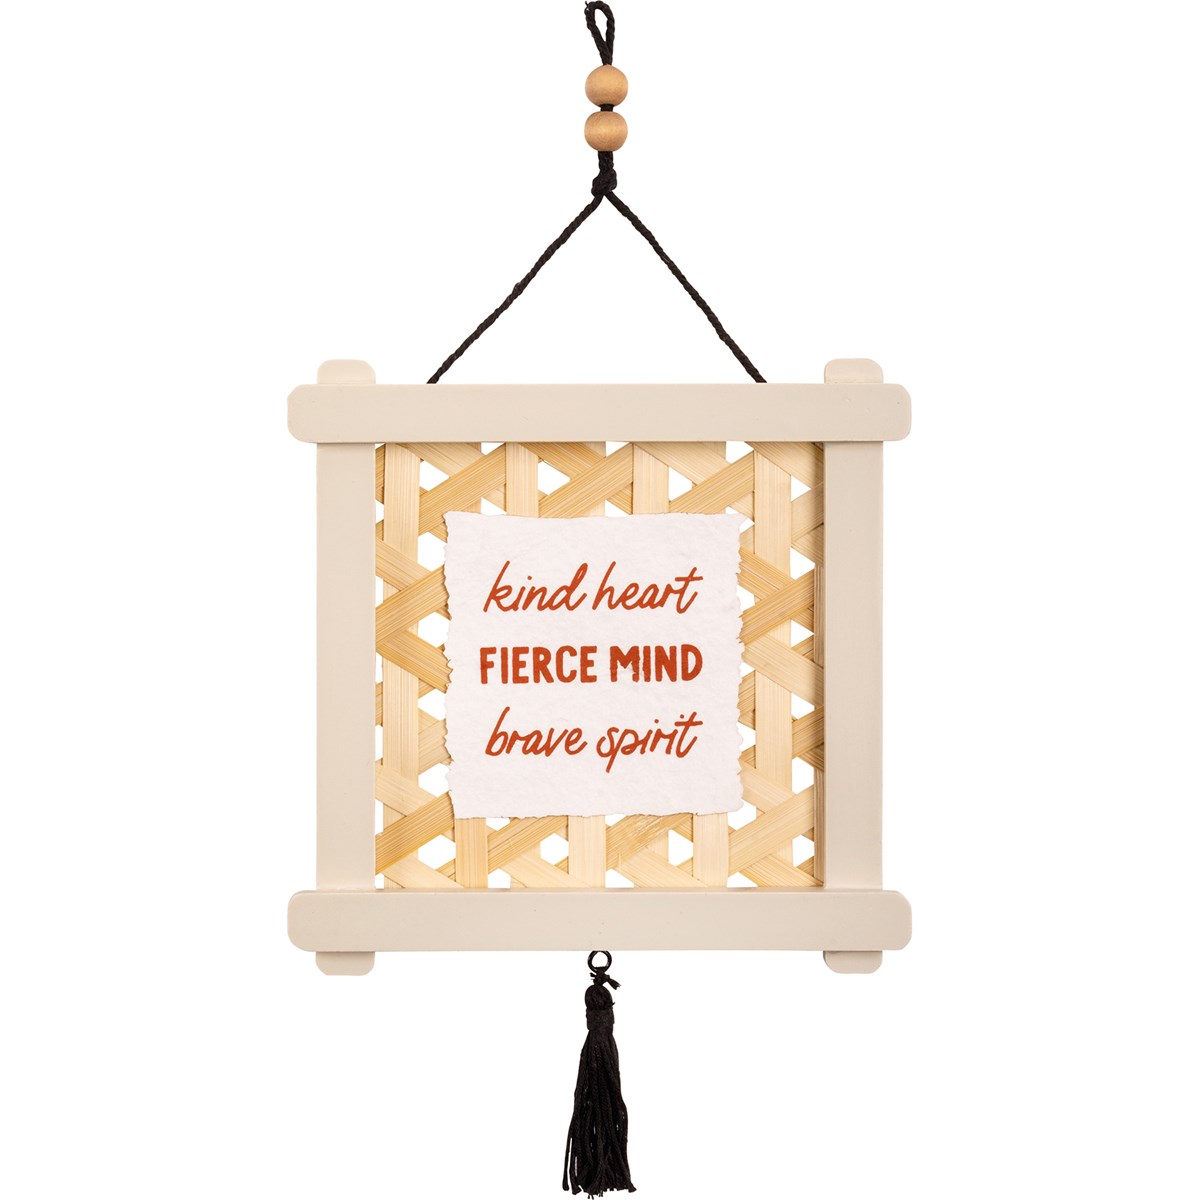 Ornament - Kind Heart Brave Spirit - 6.50" x 6.50" x 0.25" - Wood, Rattan, Paper, Fabric